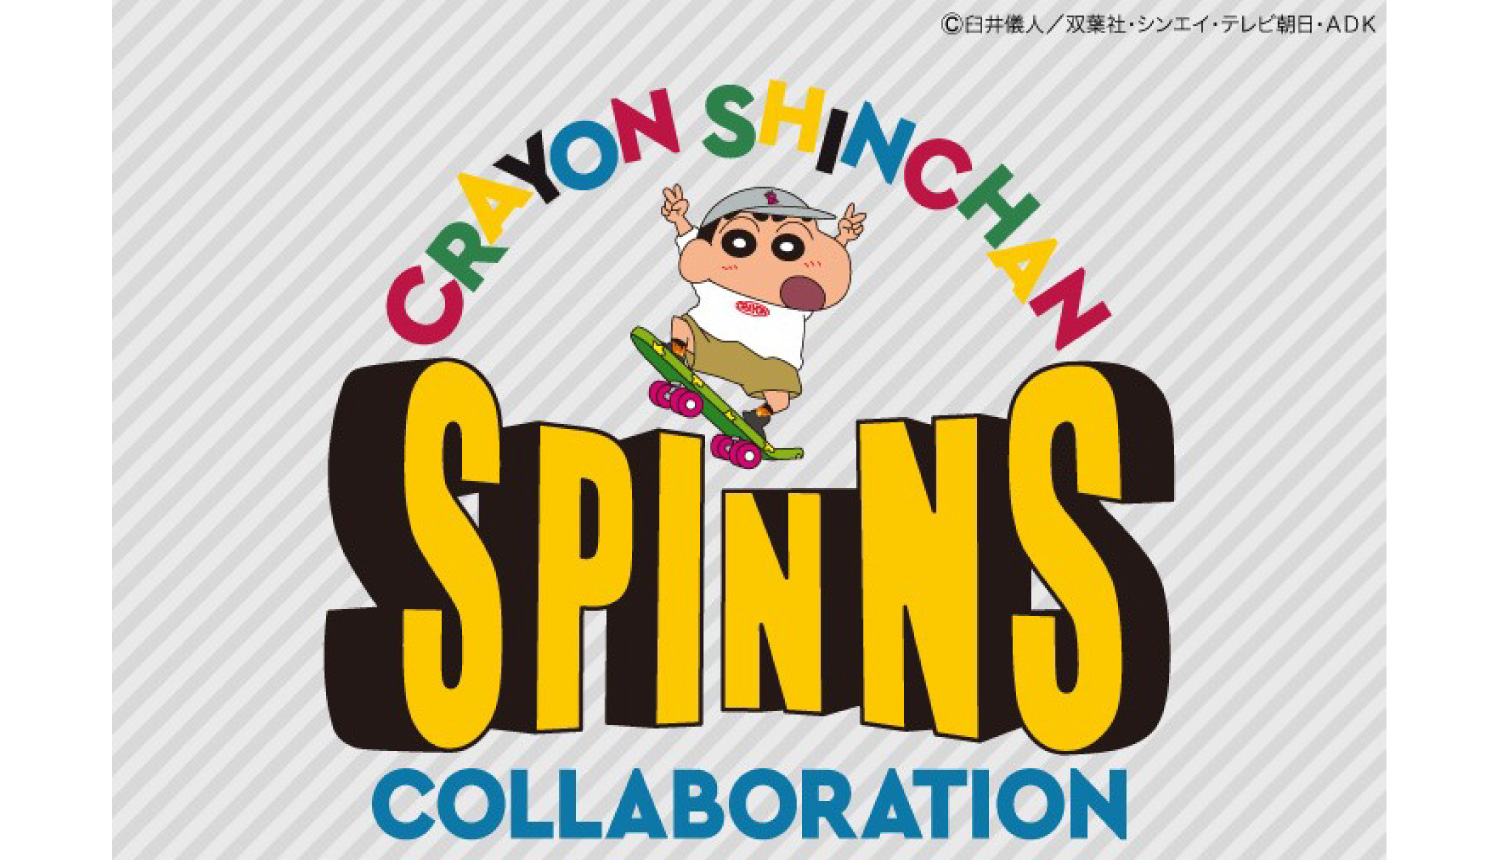 アニメ クレヨンしんちゃん とアパレルブランドspinnsのコラボレーションアイテムが登場 moshi moshi nippon もしもしにっぽん